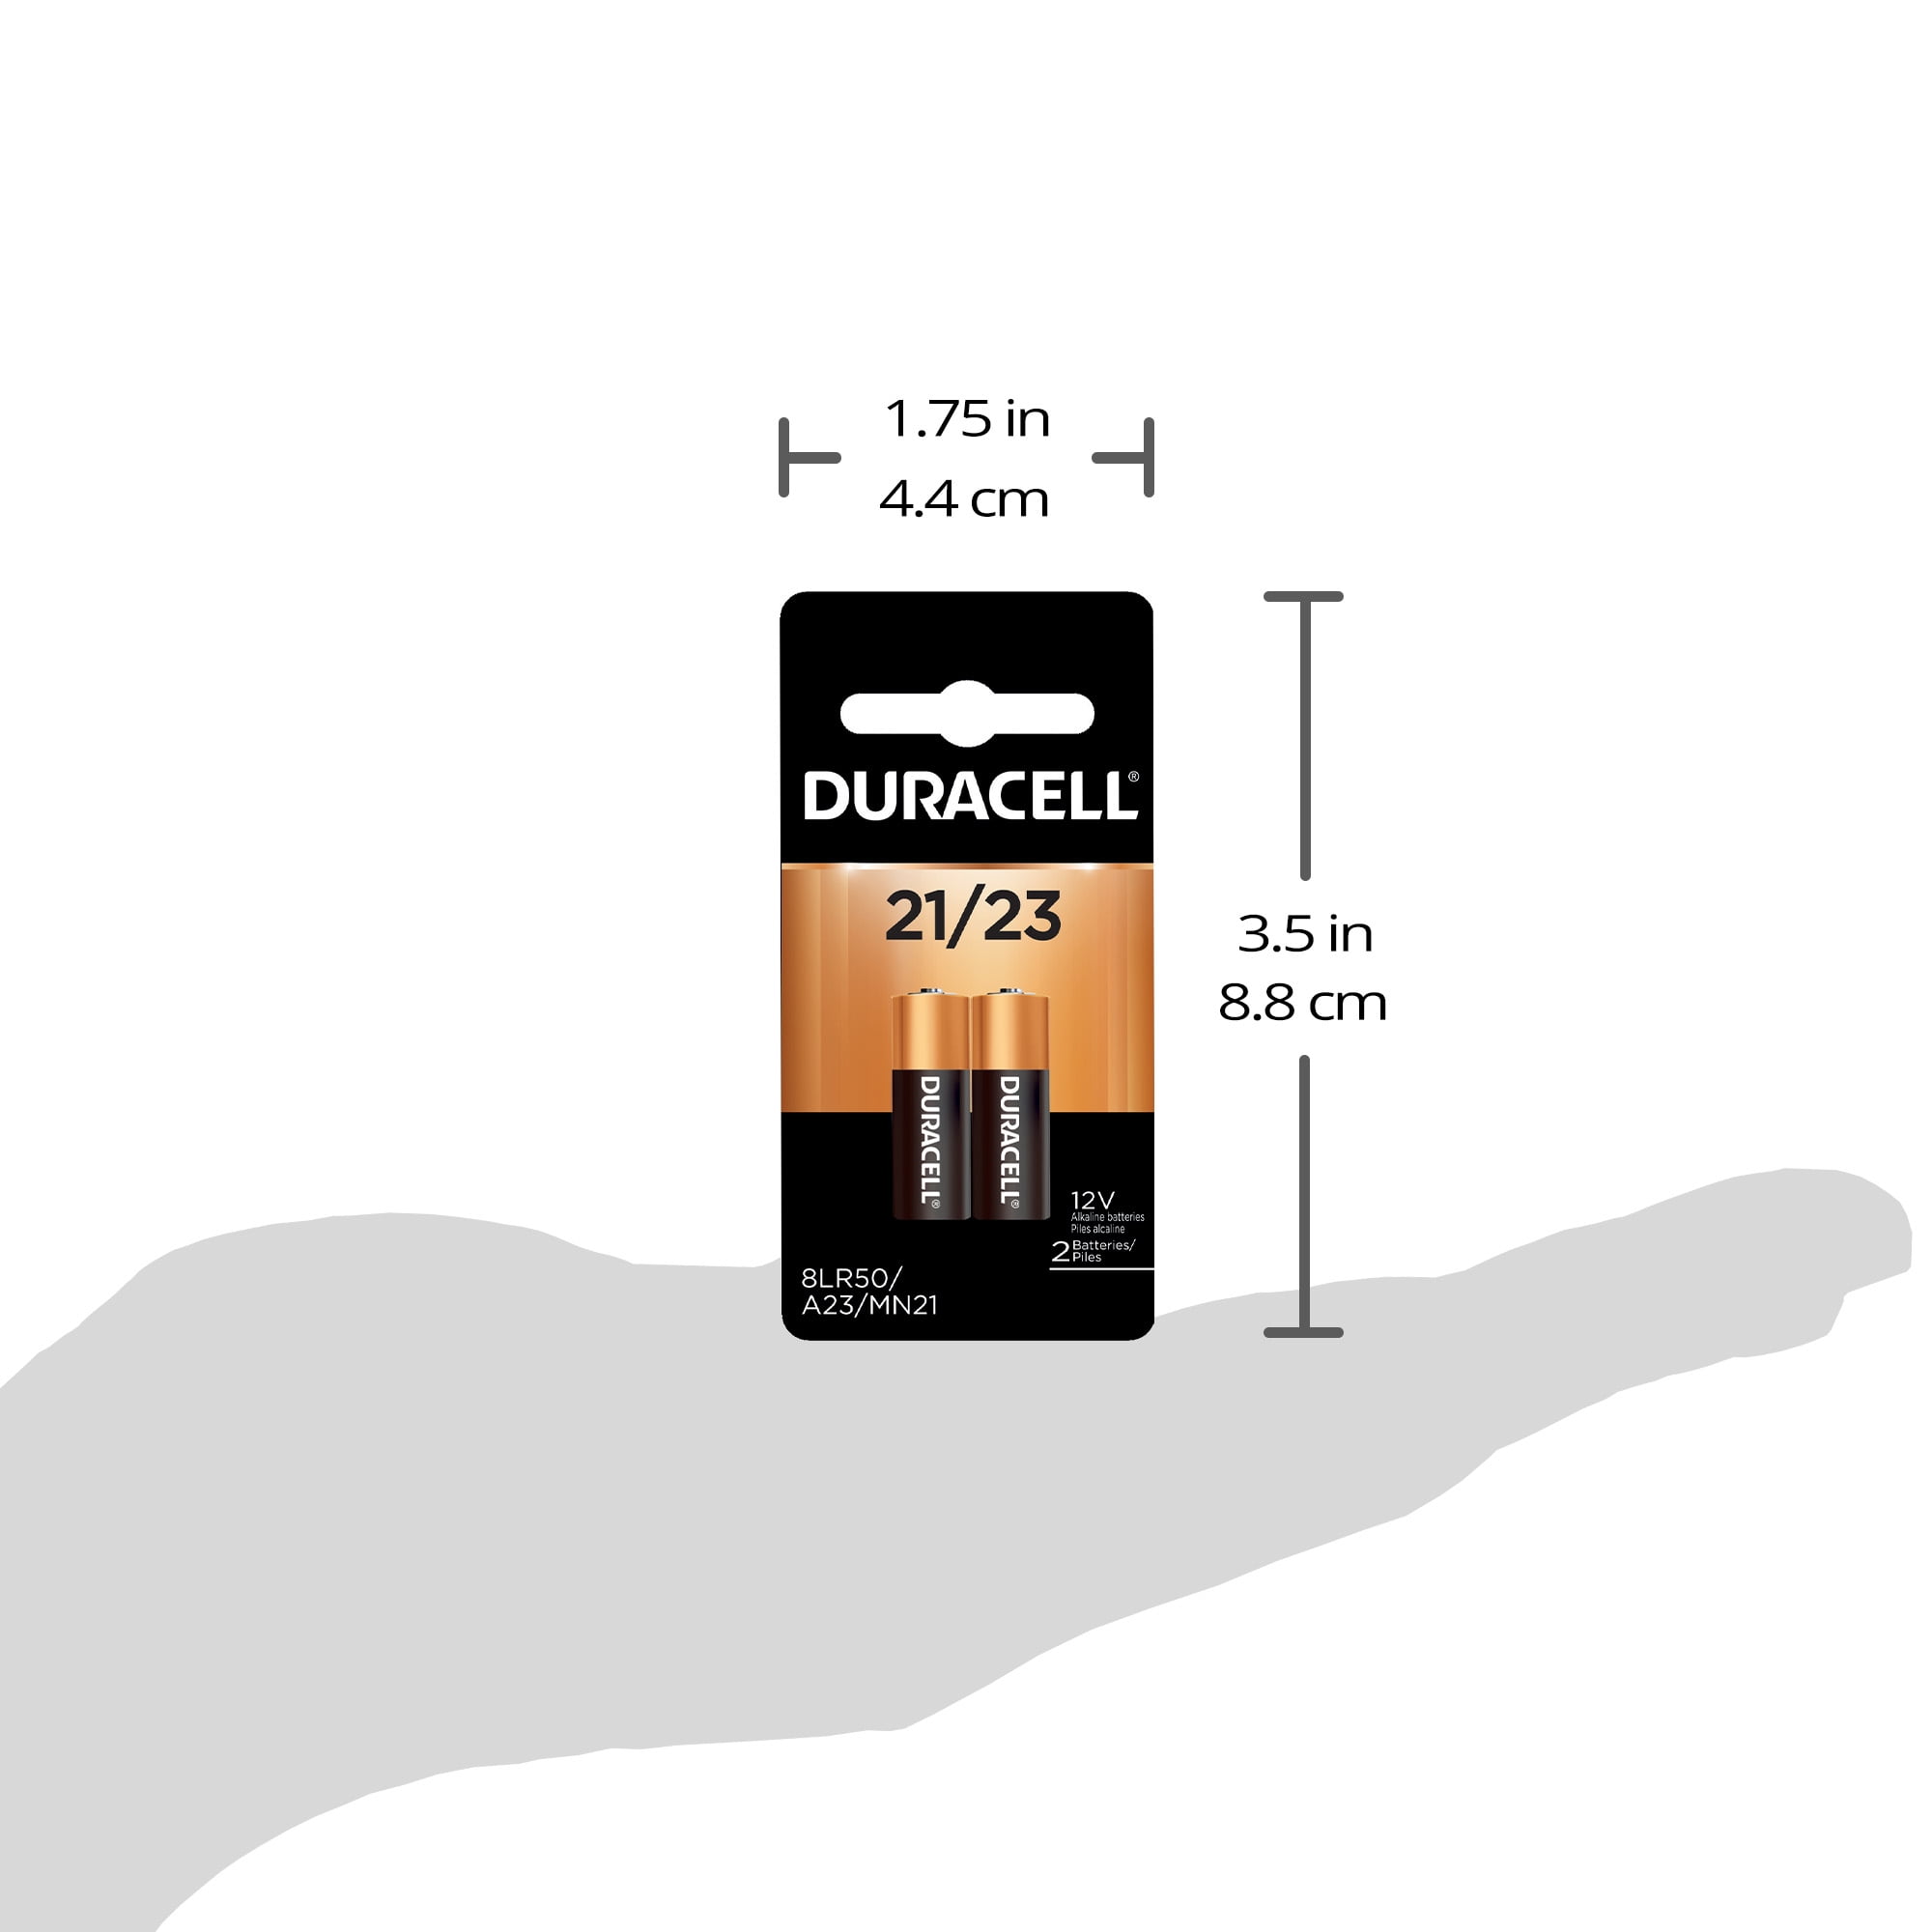 Duracell Procell Alkaline MN21 (A23, 23A) - Batteryplex